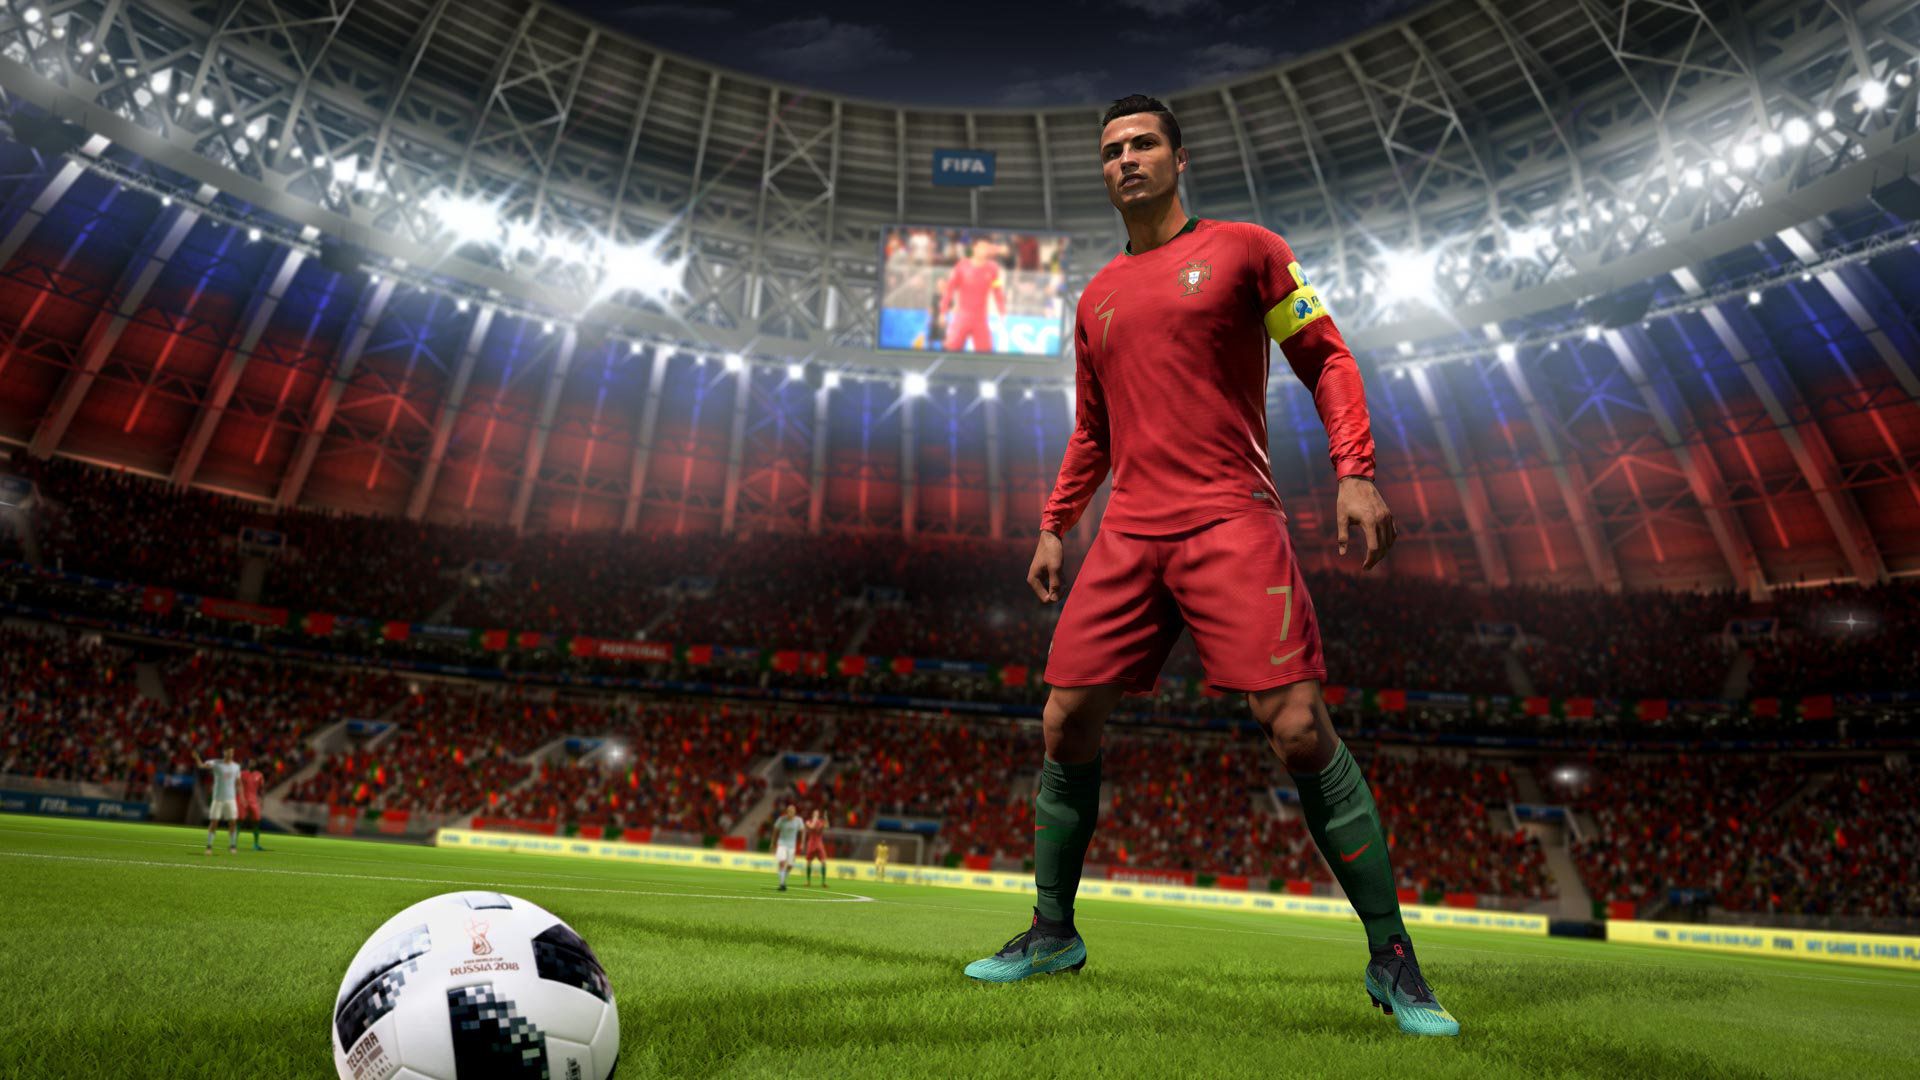 EA SPORTS™ FIFA 18 Game